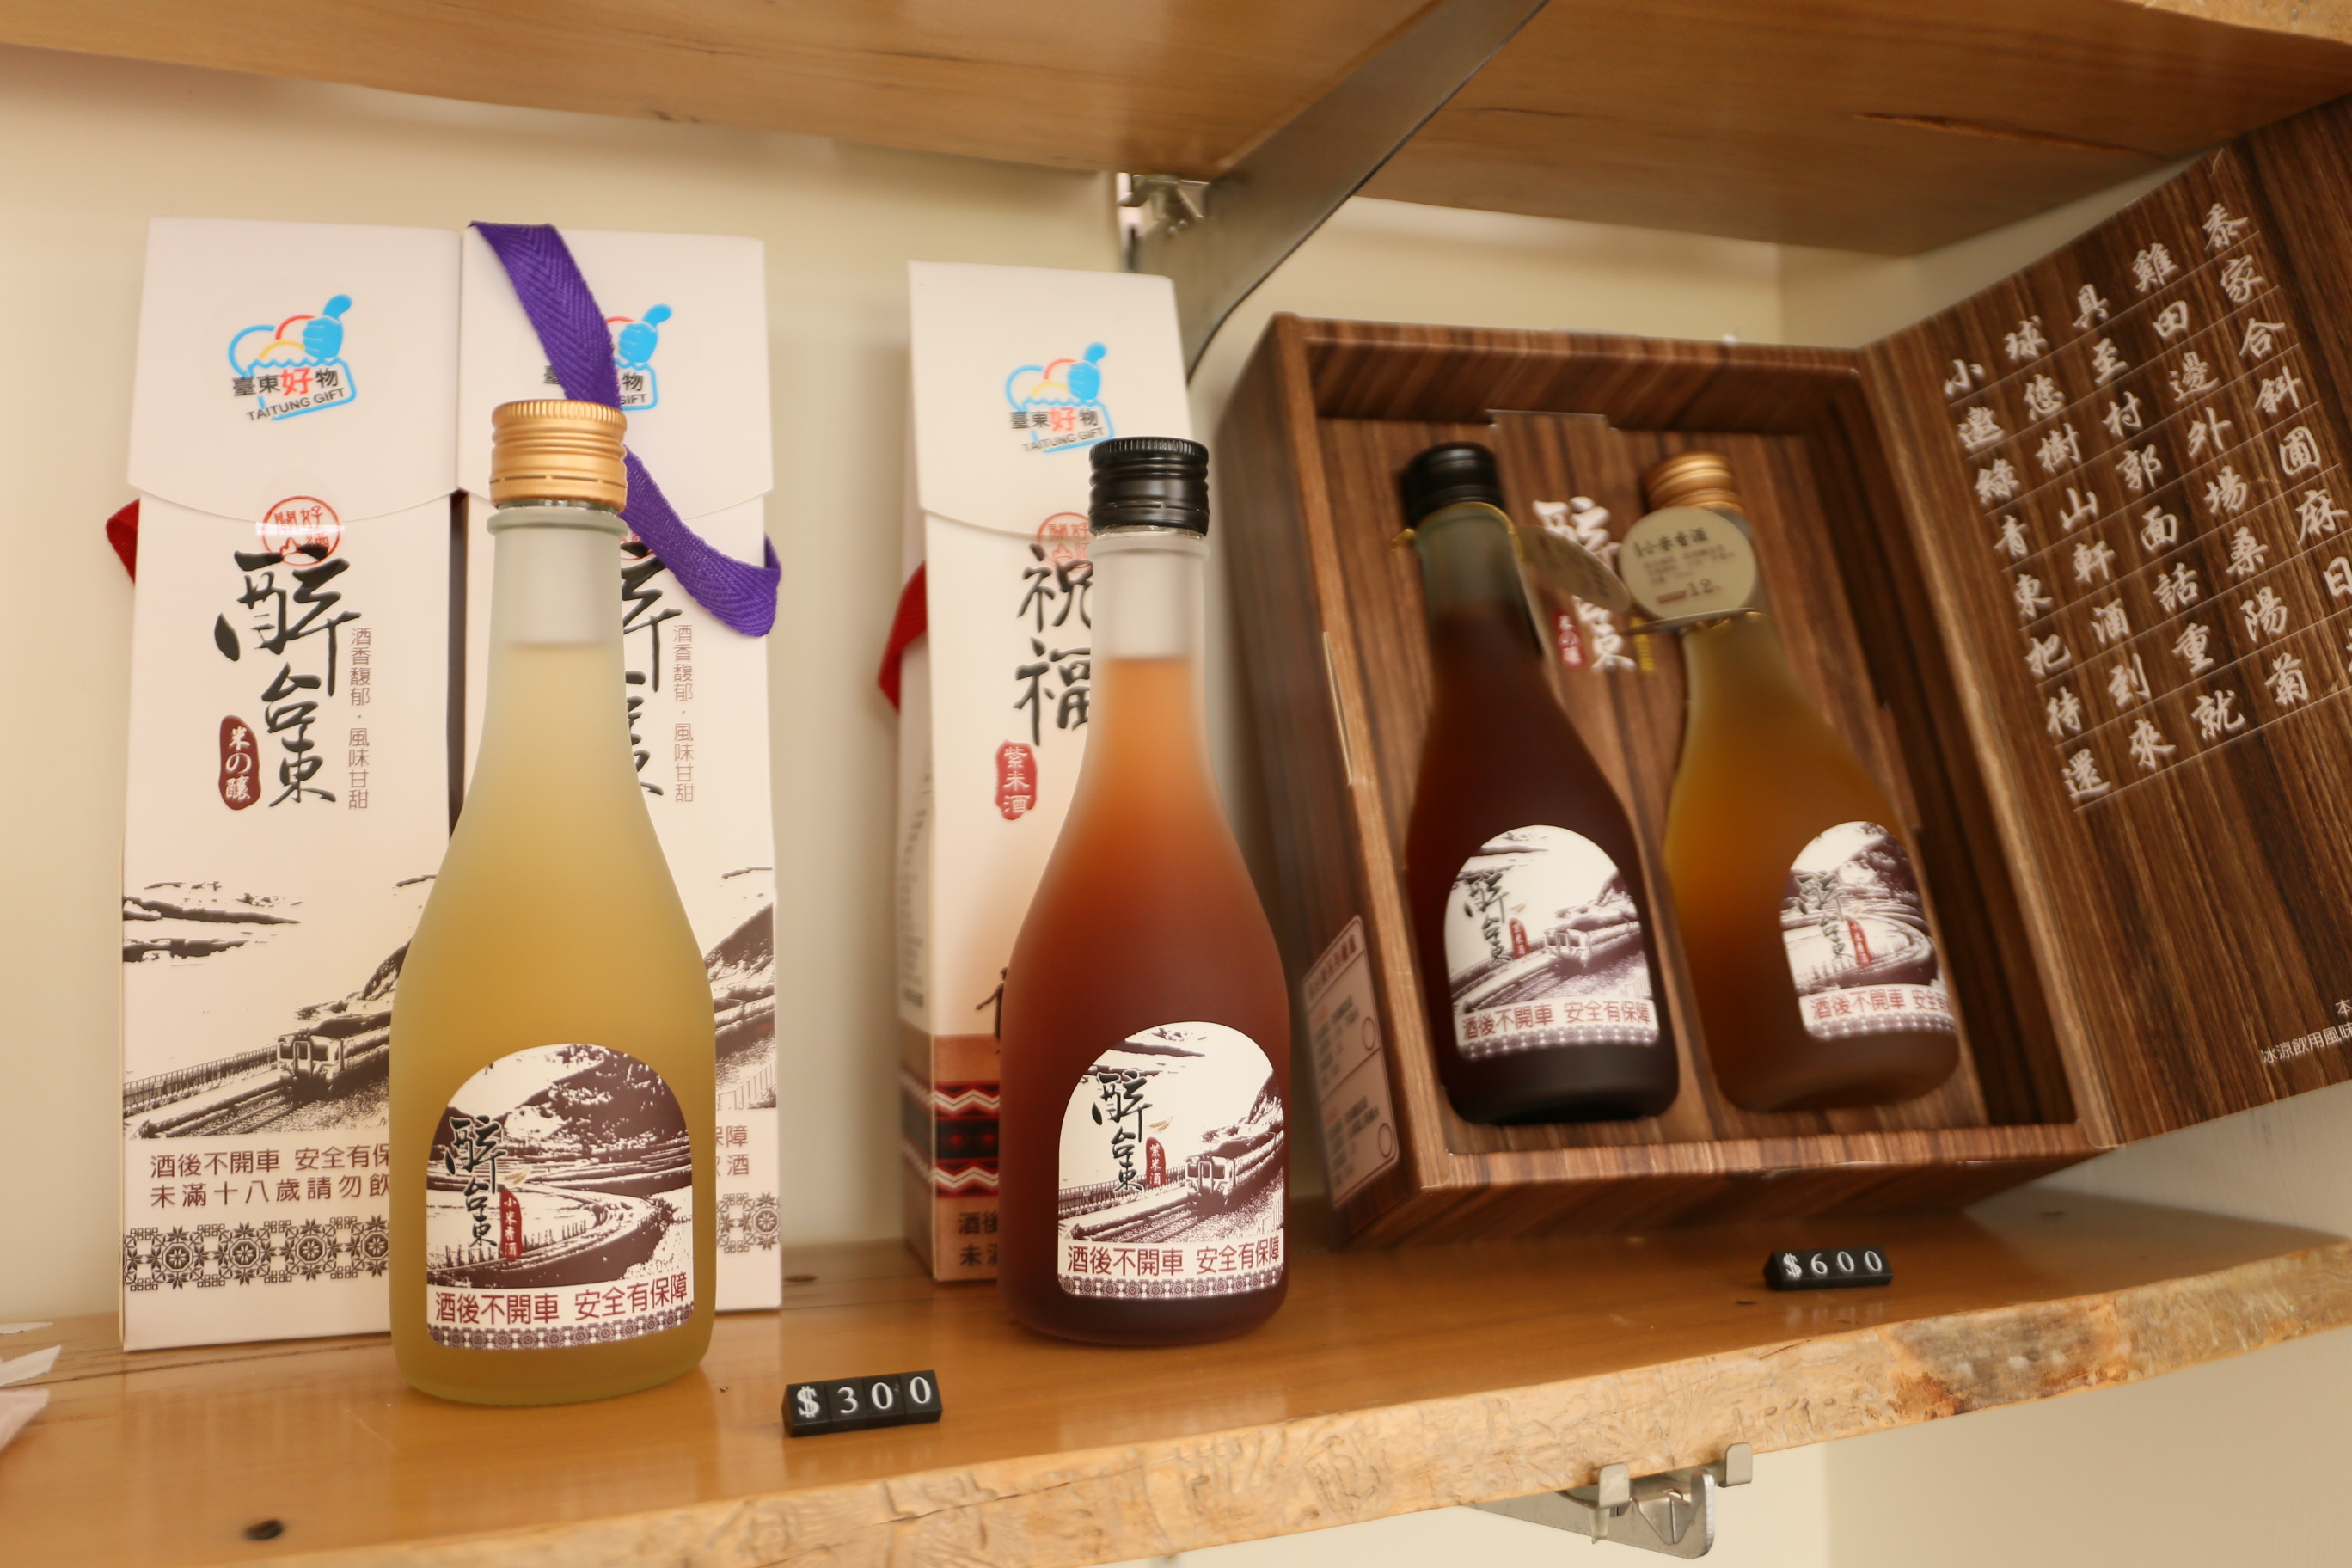 東軒坊的醉台東米酒，展售區內除了販售自家品牌商品，更有其他臺東在地好物，如：麻油薑、蜂蜜、編織帽⋯⋯等等。